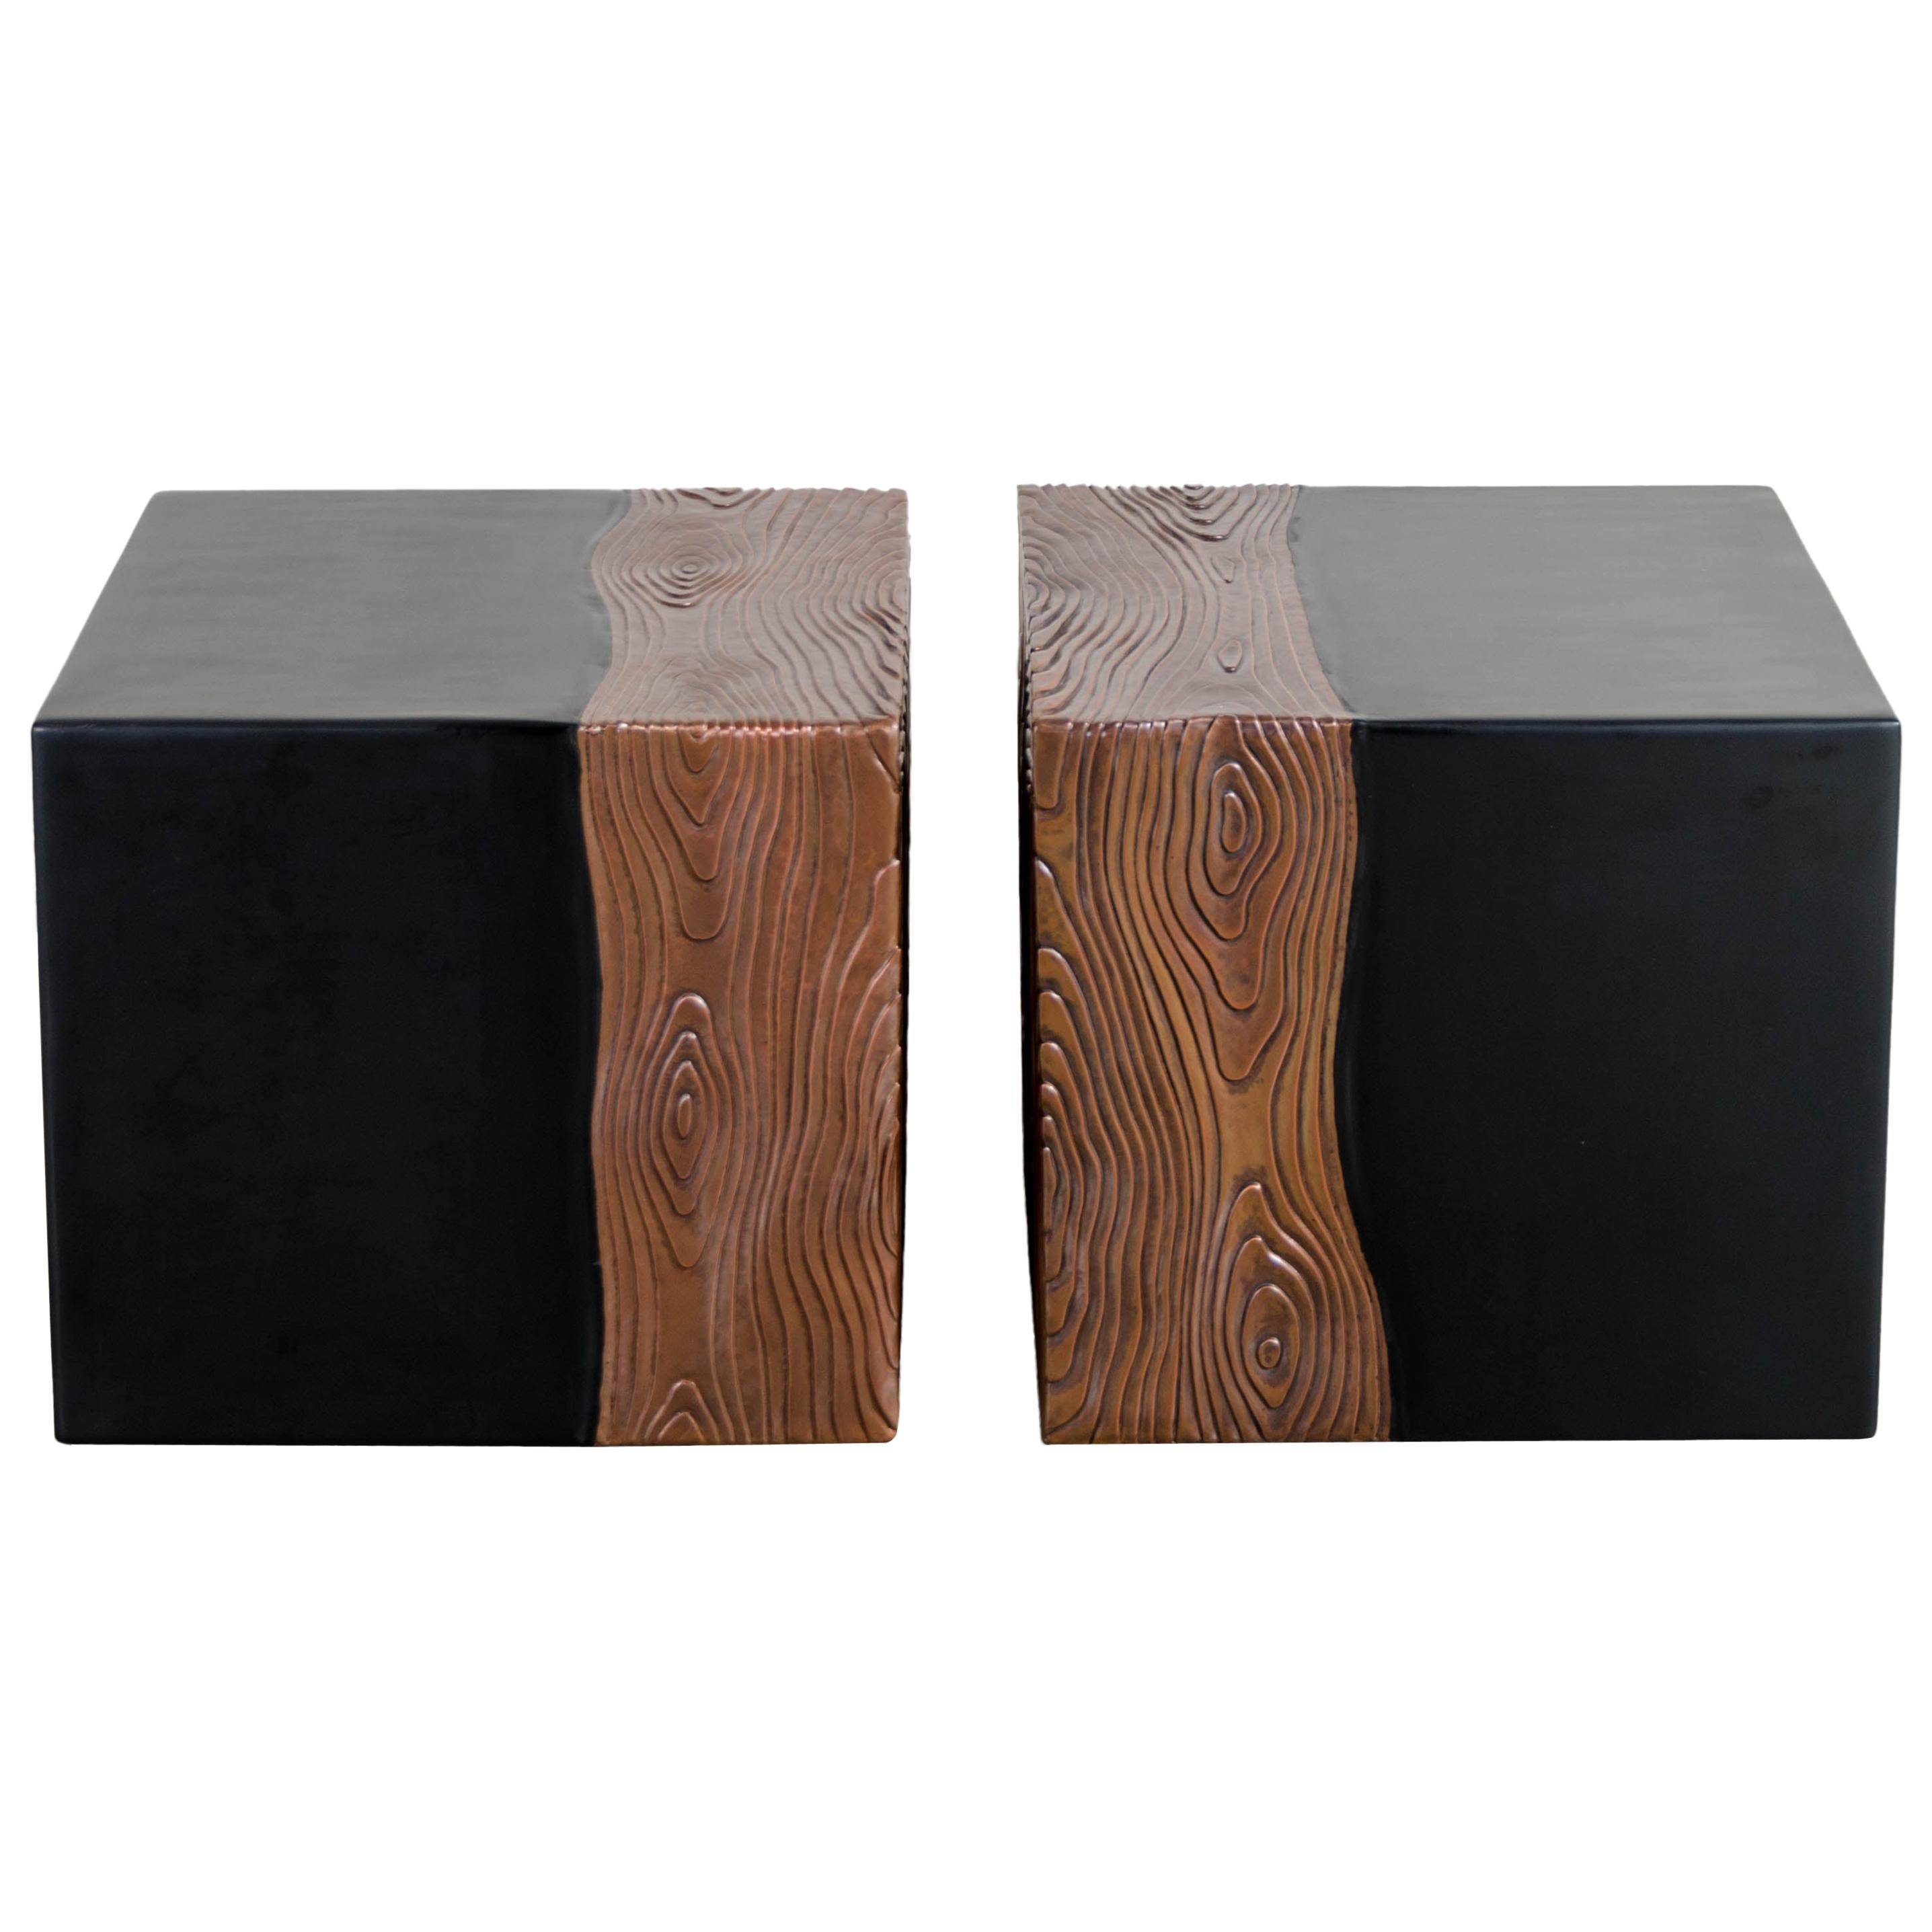 Siège carré avec motif en bois, laque noire, cuivre, lot de 2 par Robert Kuo